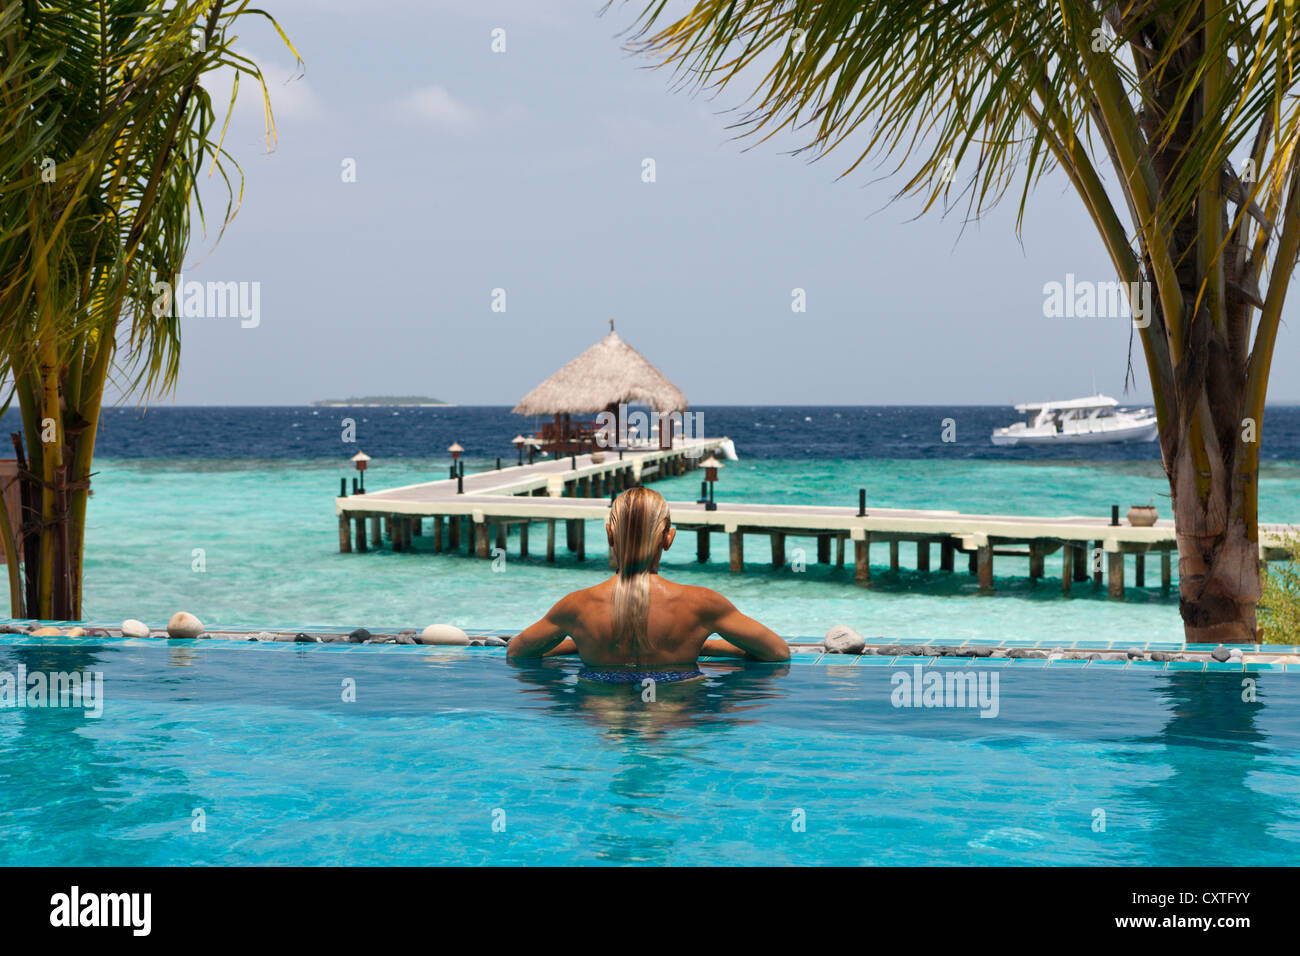 Pool of Eriyadu Island, North Male Atoll, Maldives Stock Photo